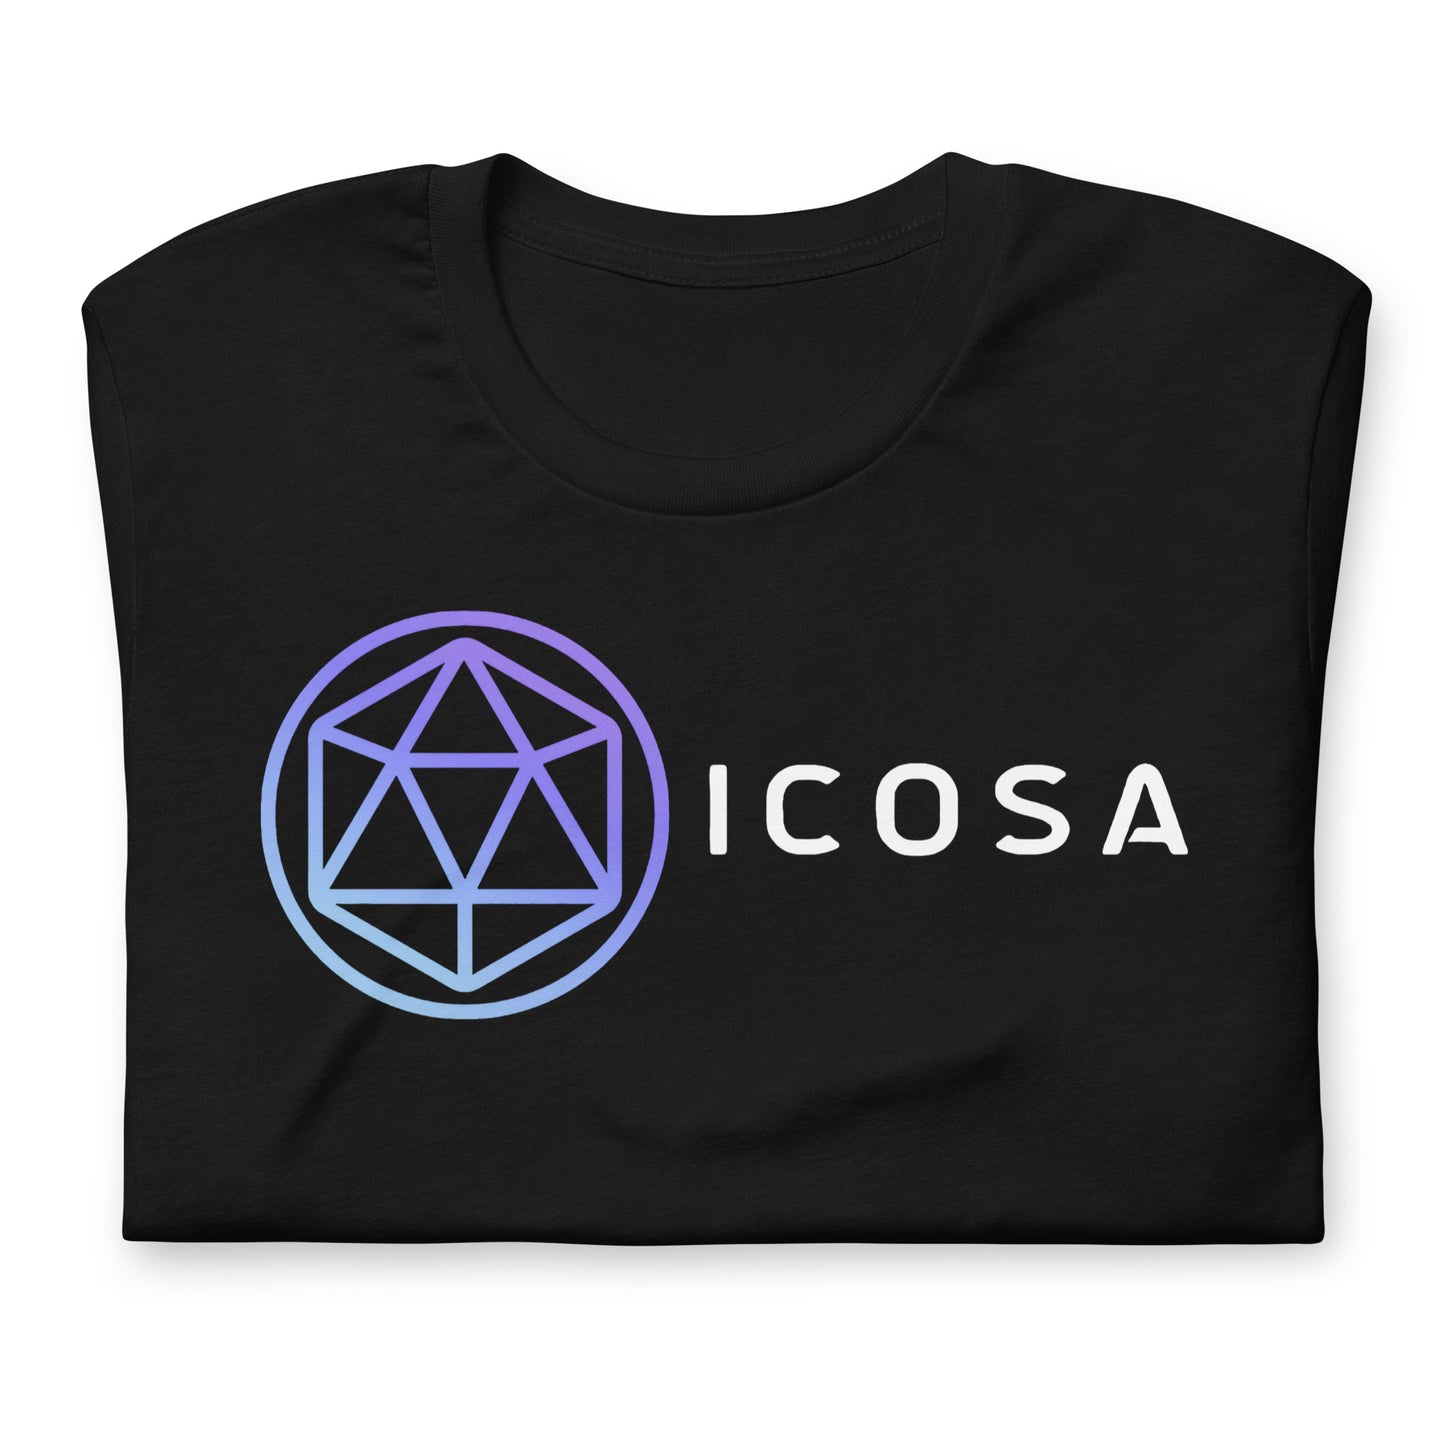 Icosa Unisex T-Shirt